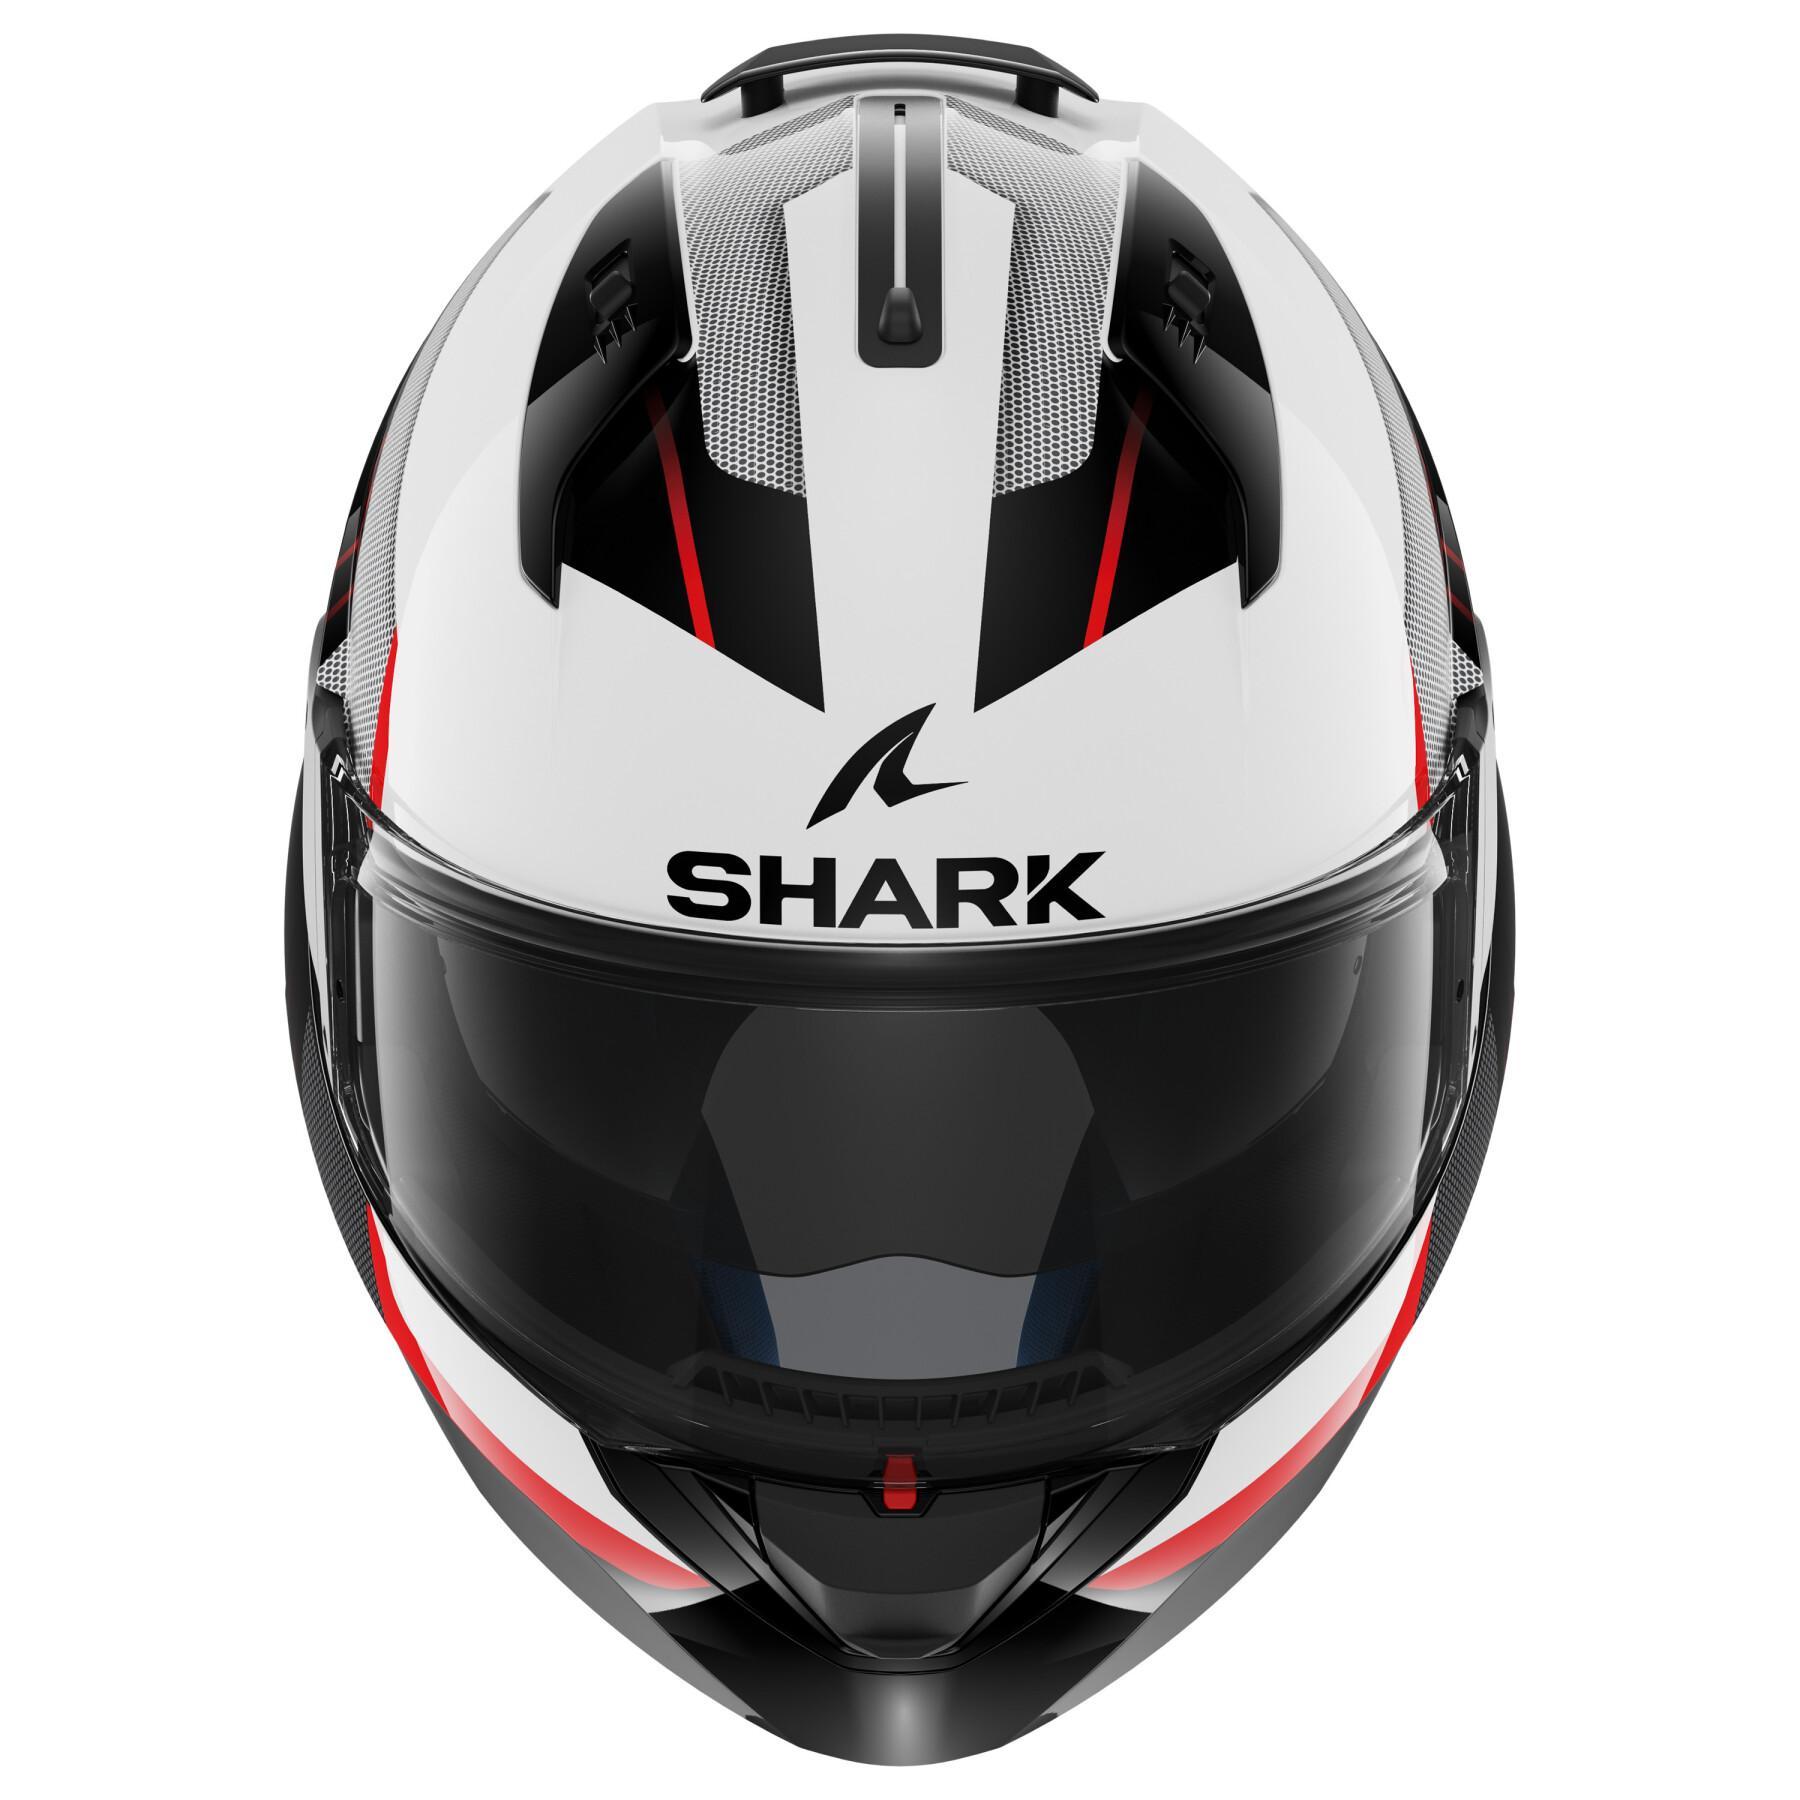 Modular motorcycle helmet Shark Evo Es Kryd White Black Red